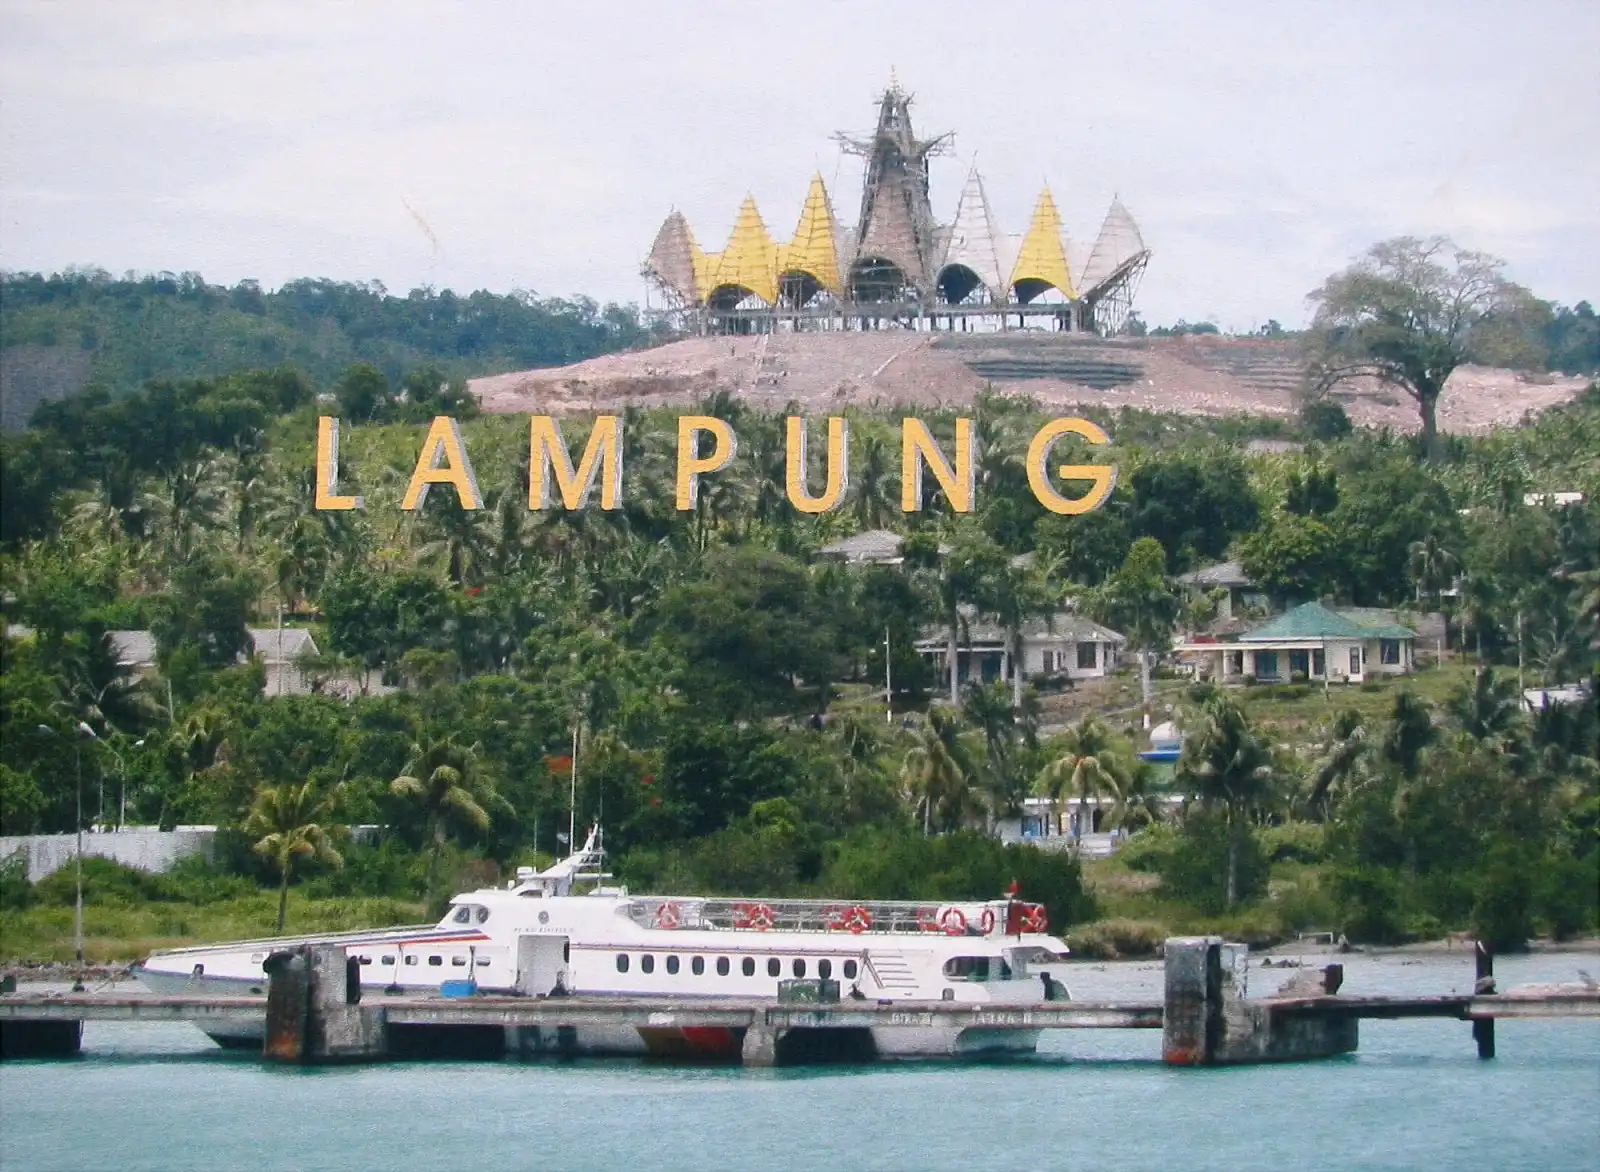 Bandar Lampung tourism